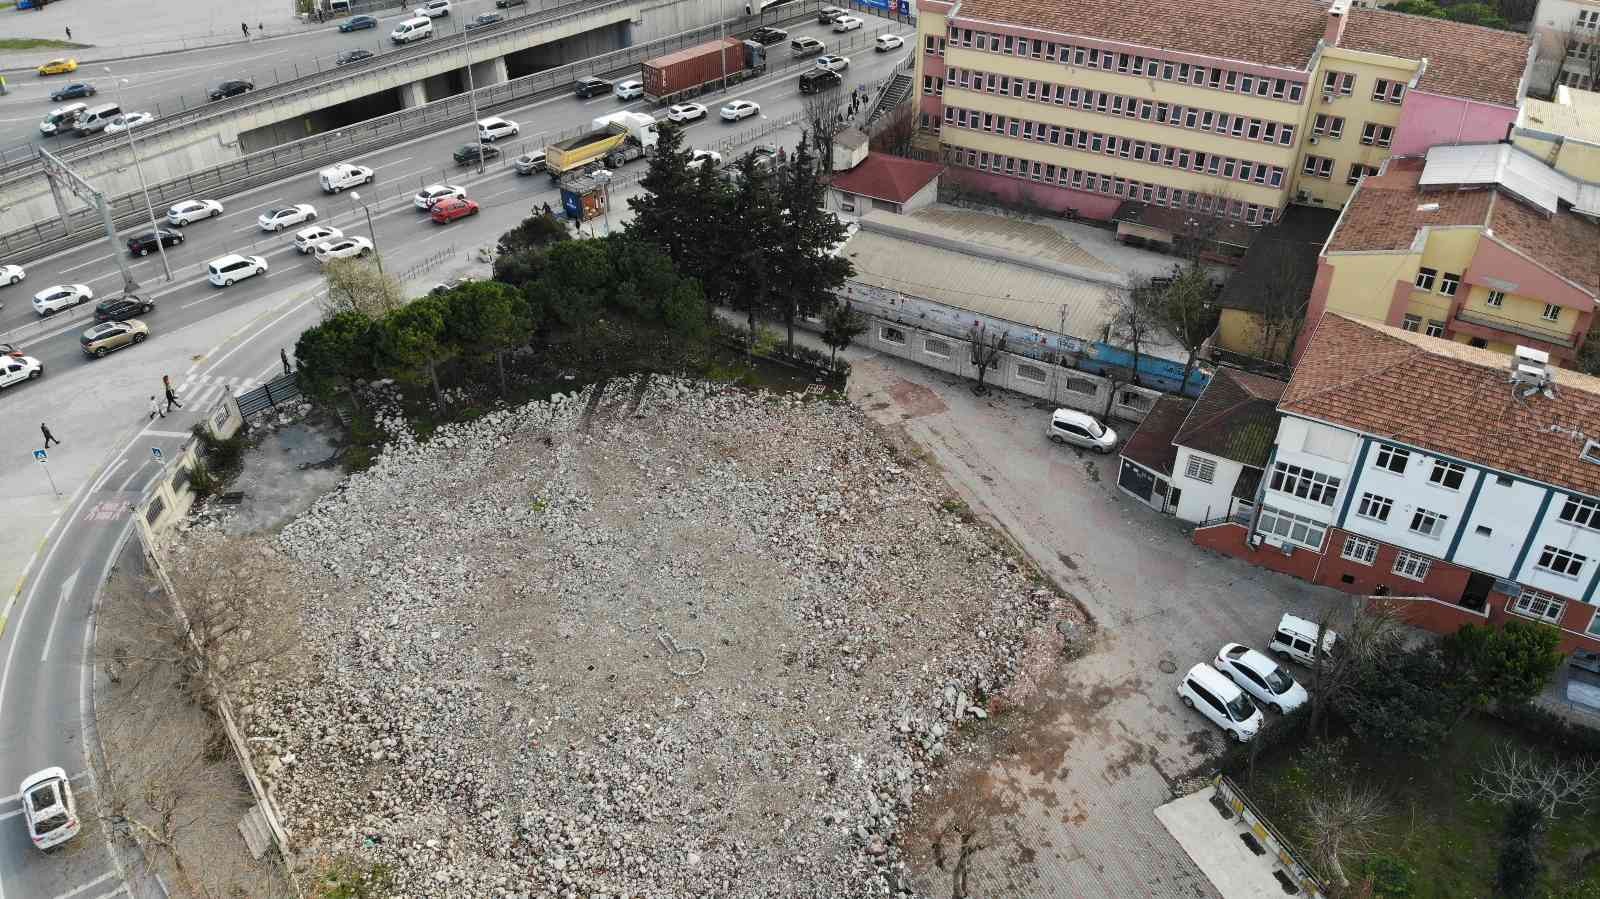 Yaklaşık 2.5 yıl önce yıktırılan caminin projesi bile ortada yok #istanbul